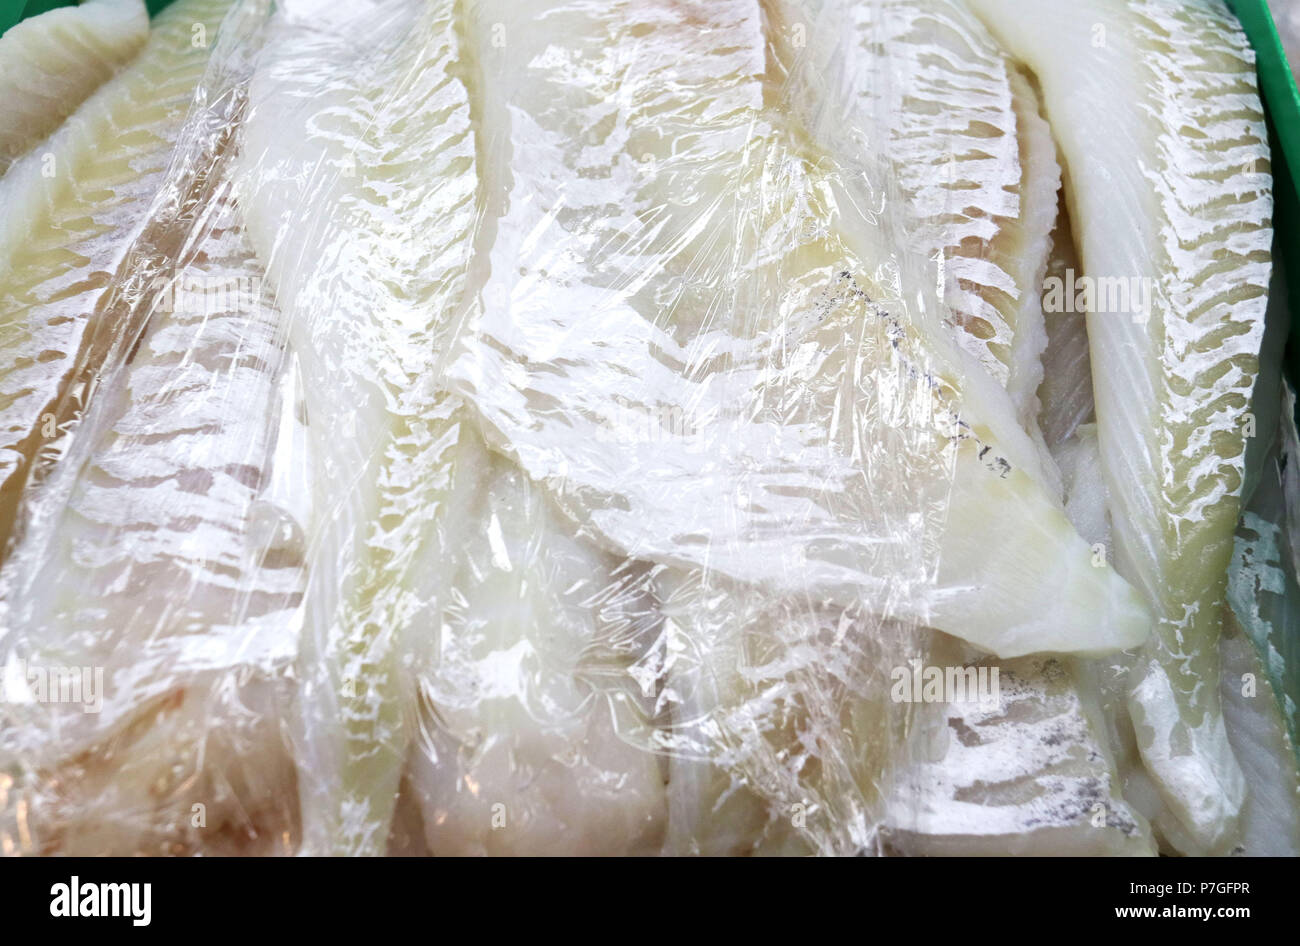 Wild cod i filetti di pesce coperti con cellophane wrap Foto Stock